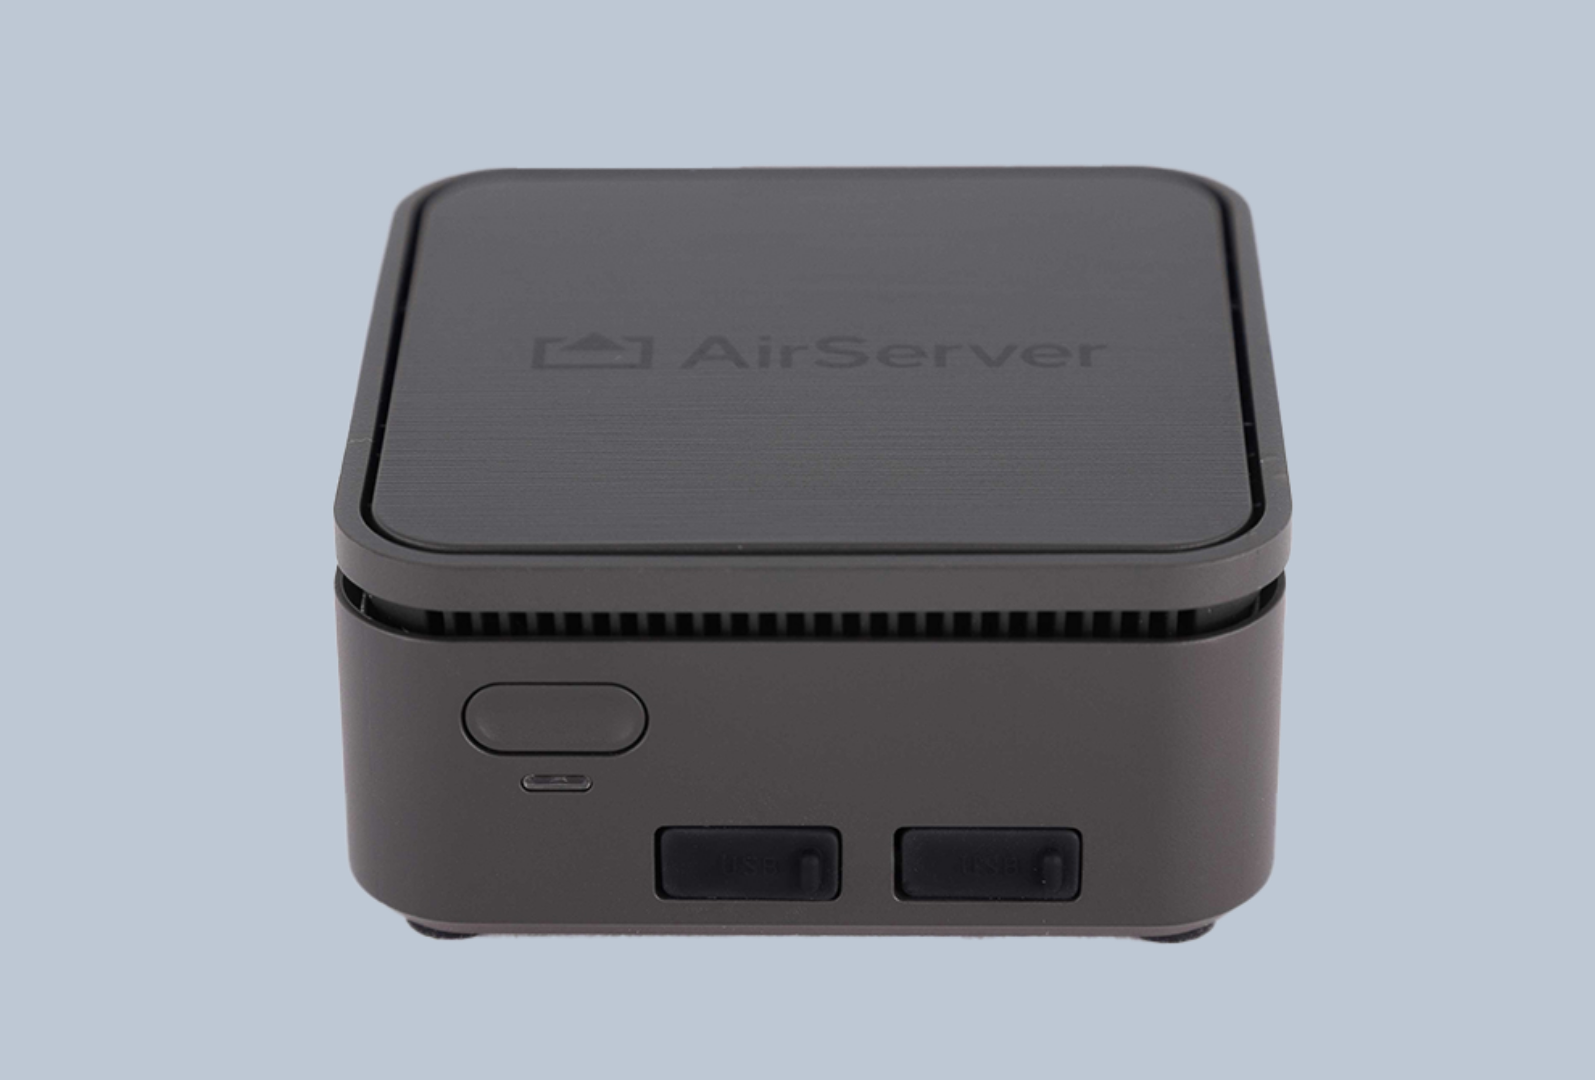 Airserver Connect 2 - Drahtlose Übertragung mit 4k UHD